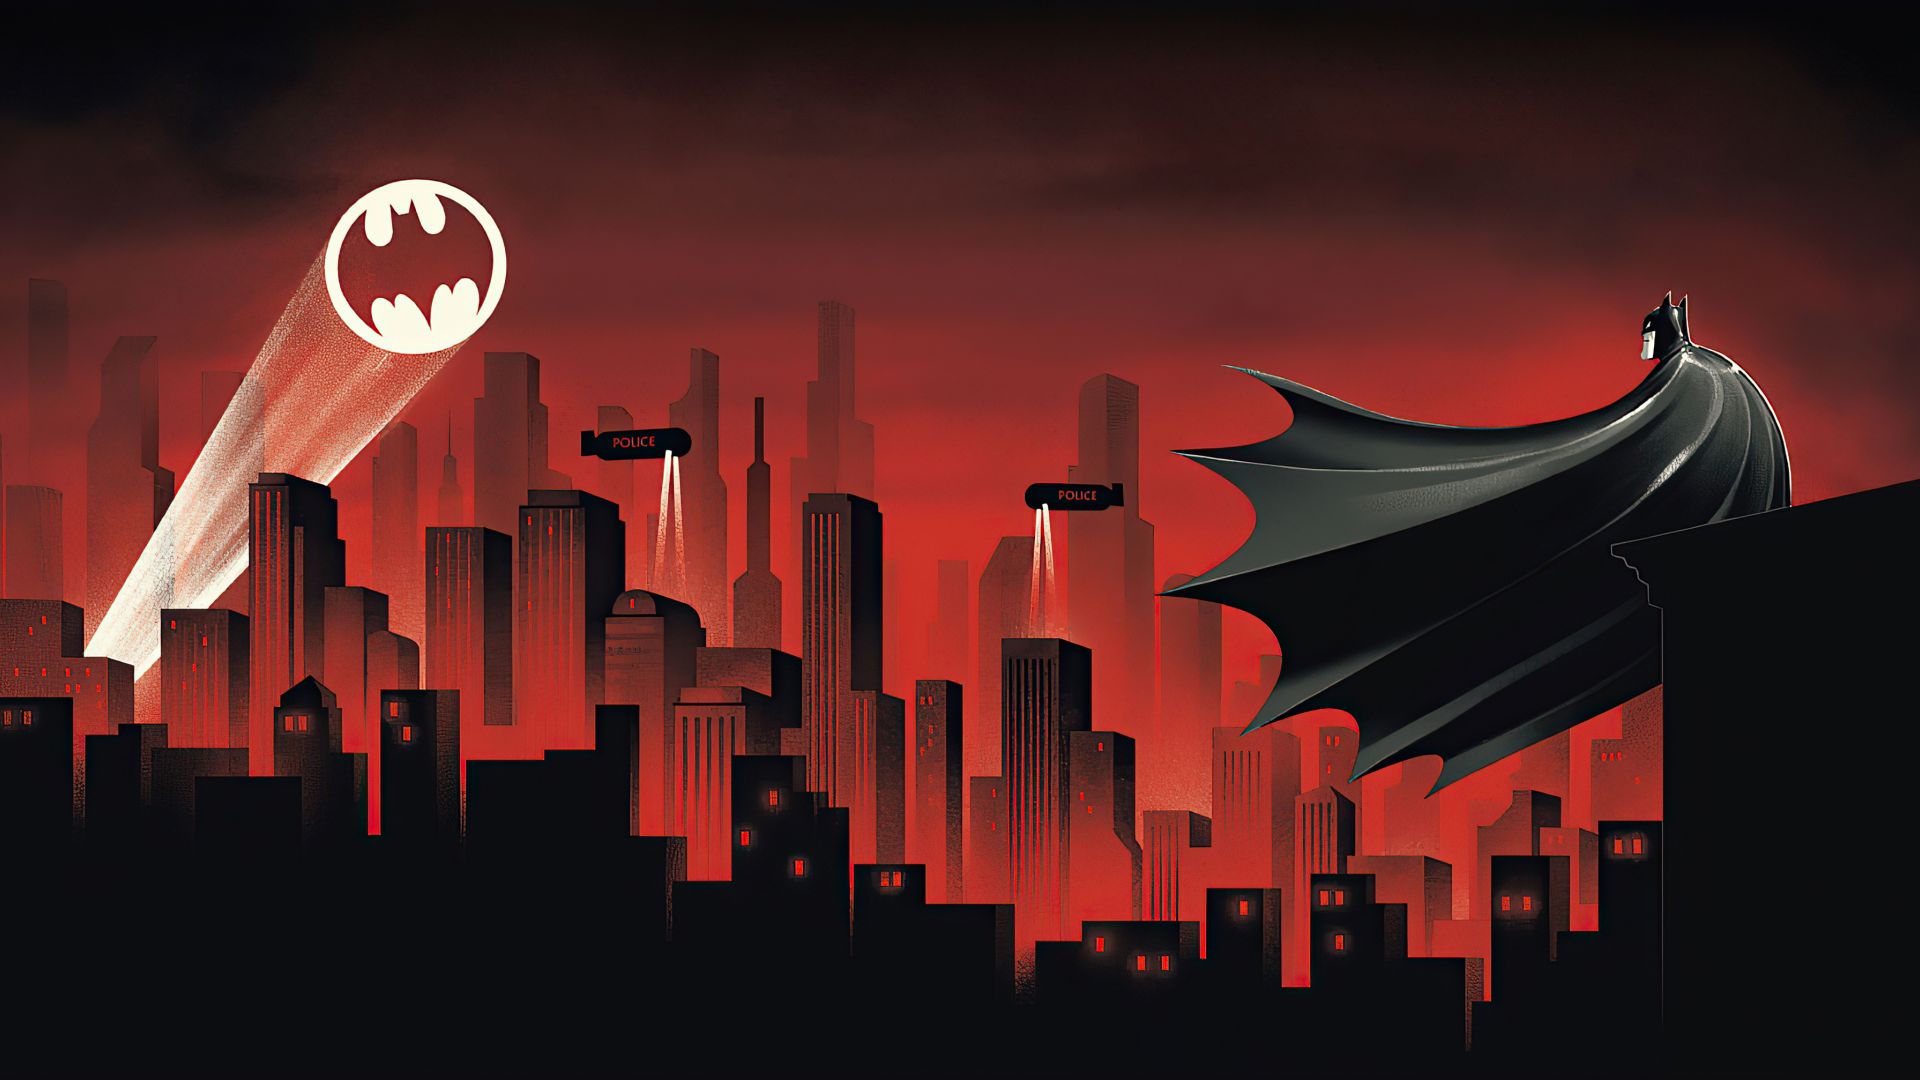 Batman Under the Red Hood 4k Ultra HD Wallpaper